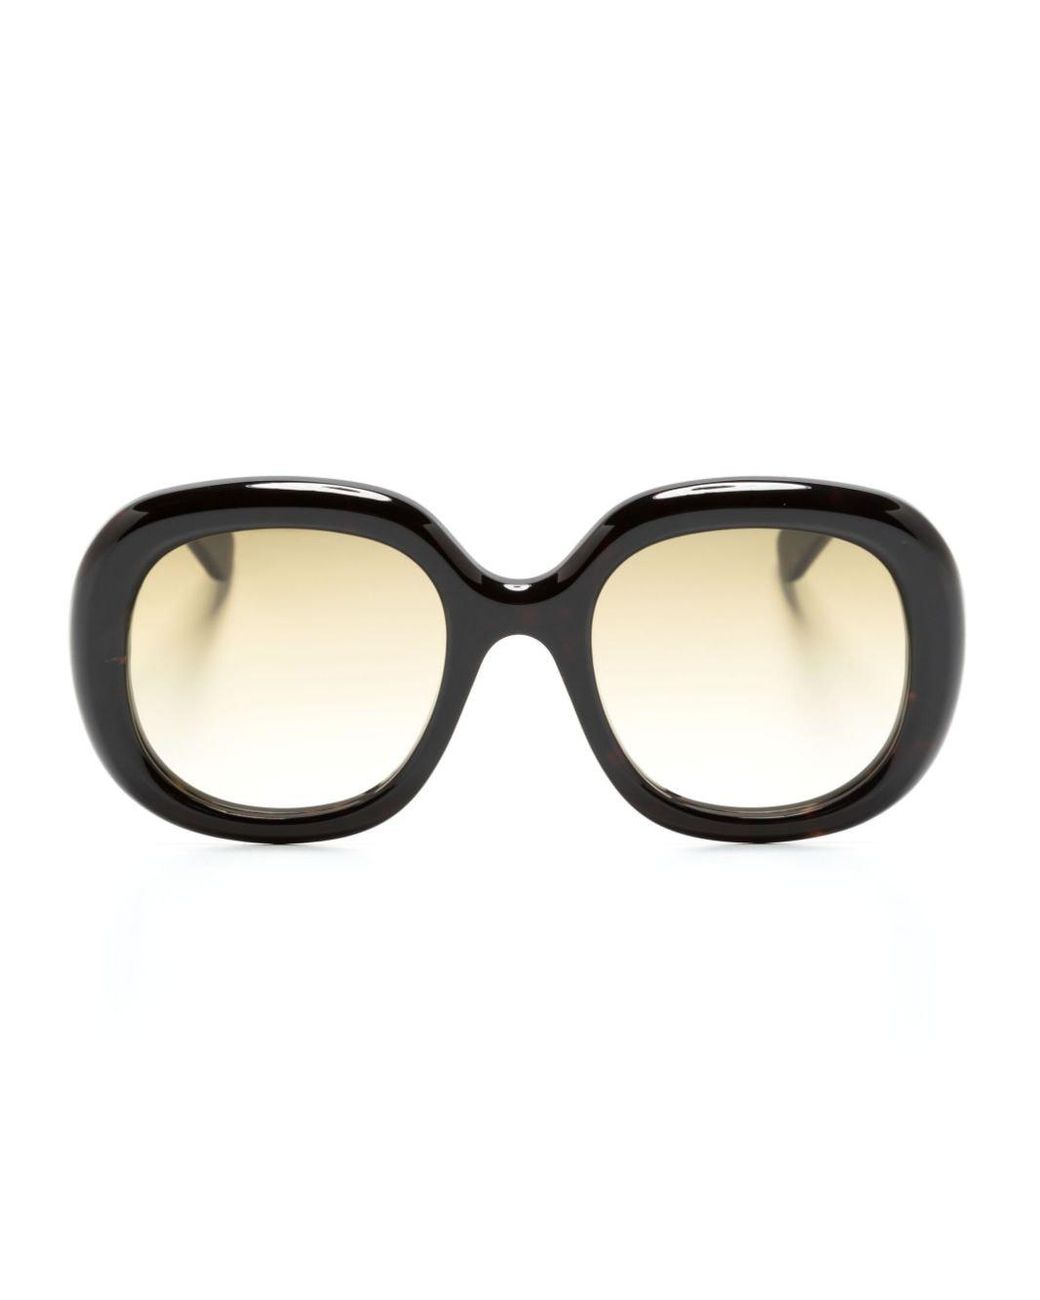 Chloé Tortoiseshell-effect Square-frame Sunglasses in Brown | Lyst Australia